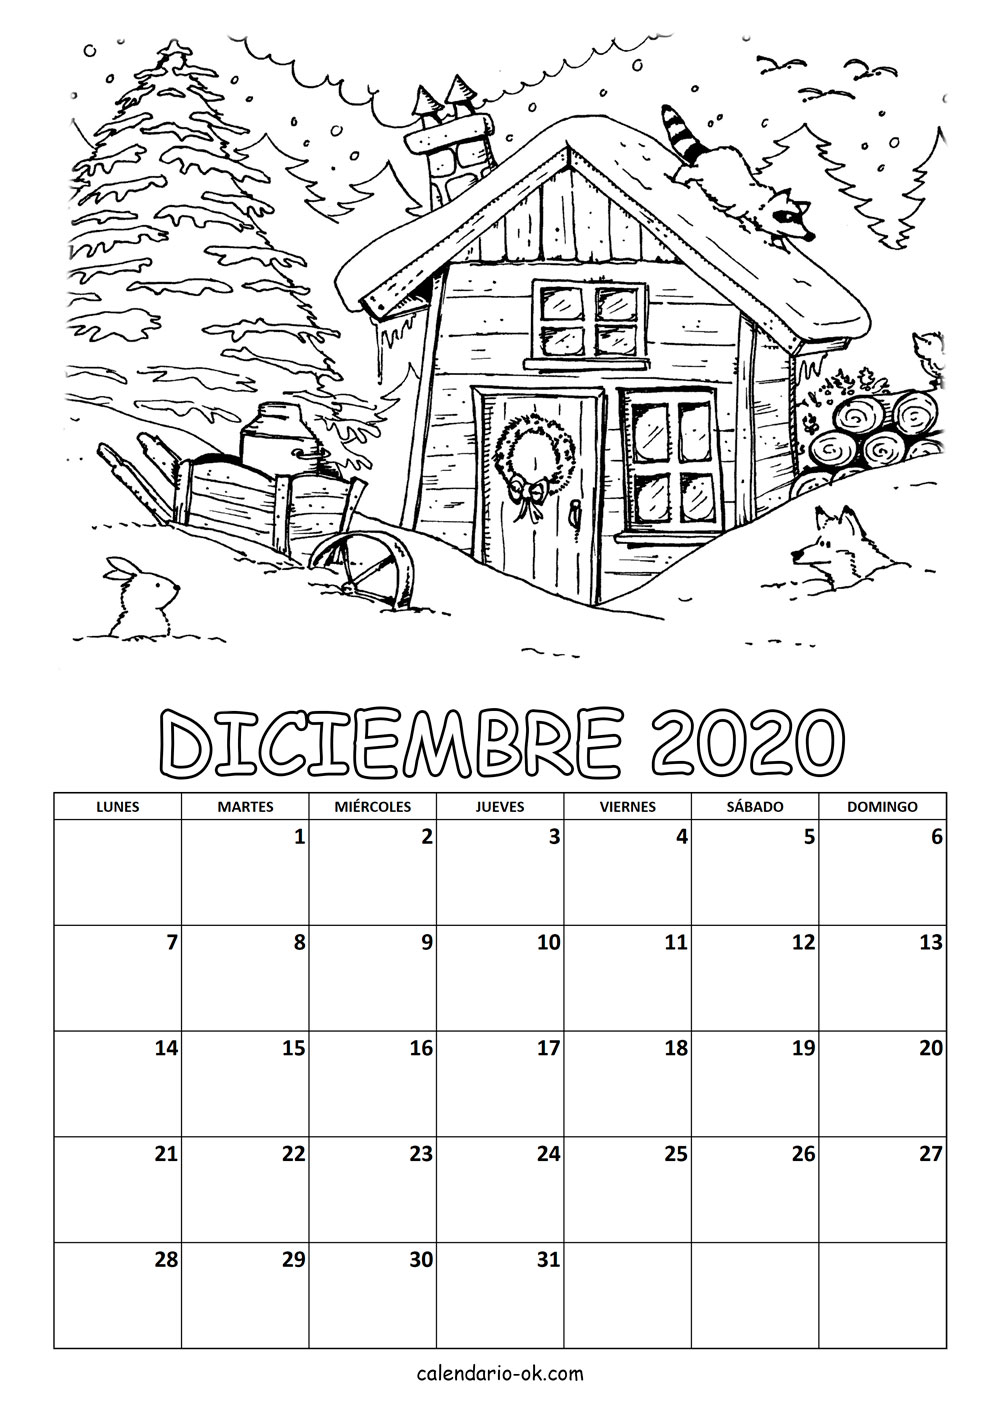 Calendario DICIEMBRE 2020 COLOREAR